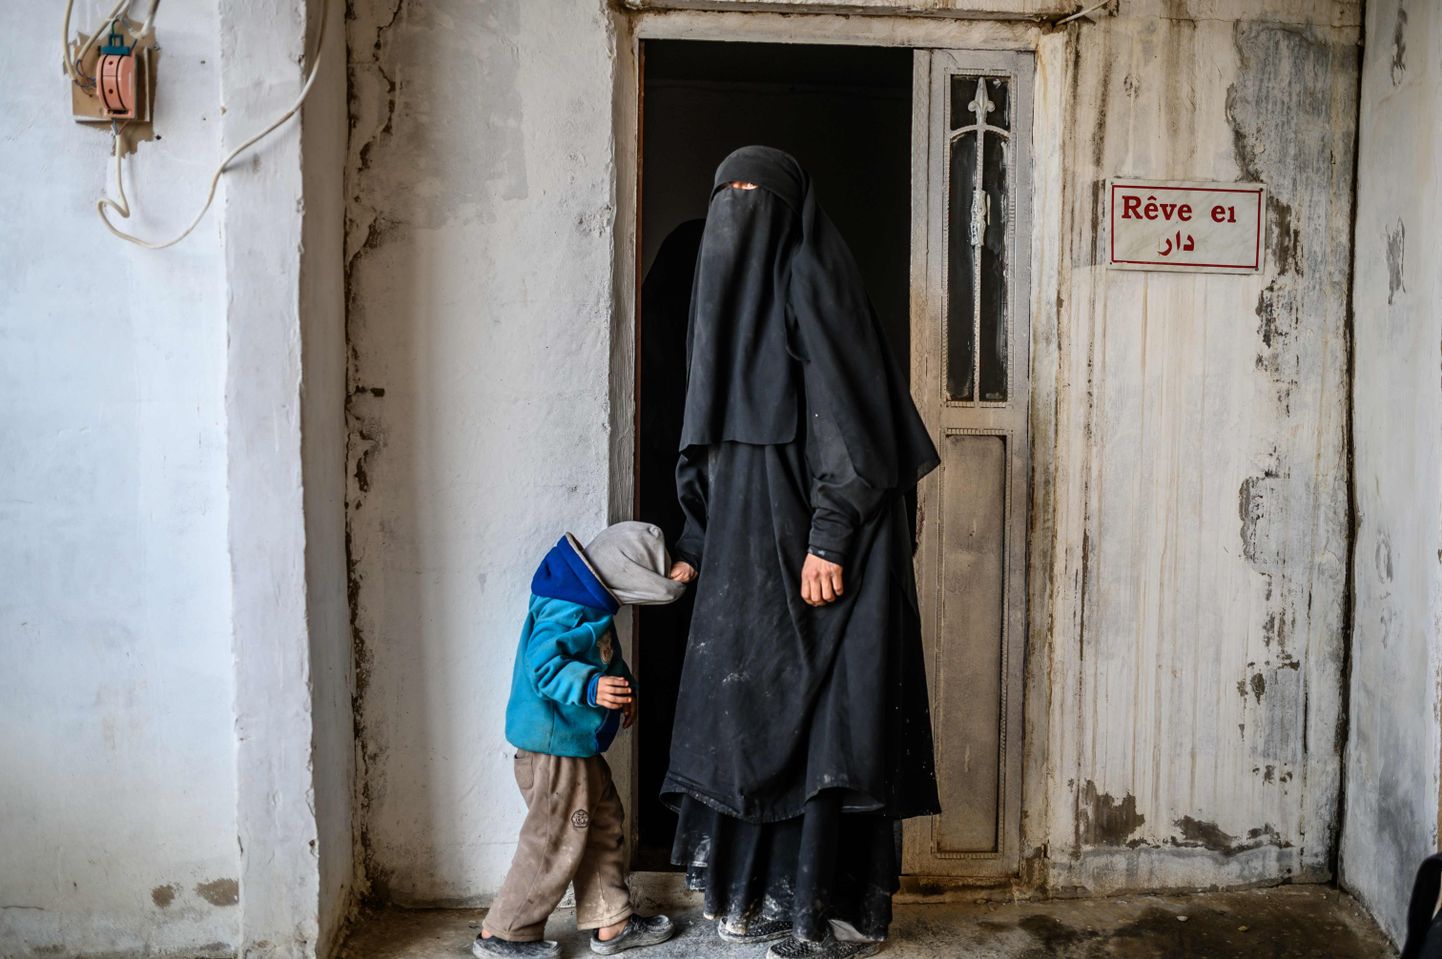 ISISe ridadesse kuulunud prantslanna koos oma lapsega al-Holi laagris Kirde-Süürias.